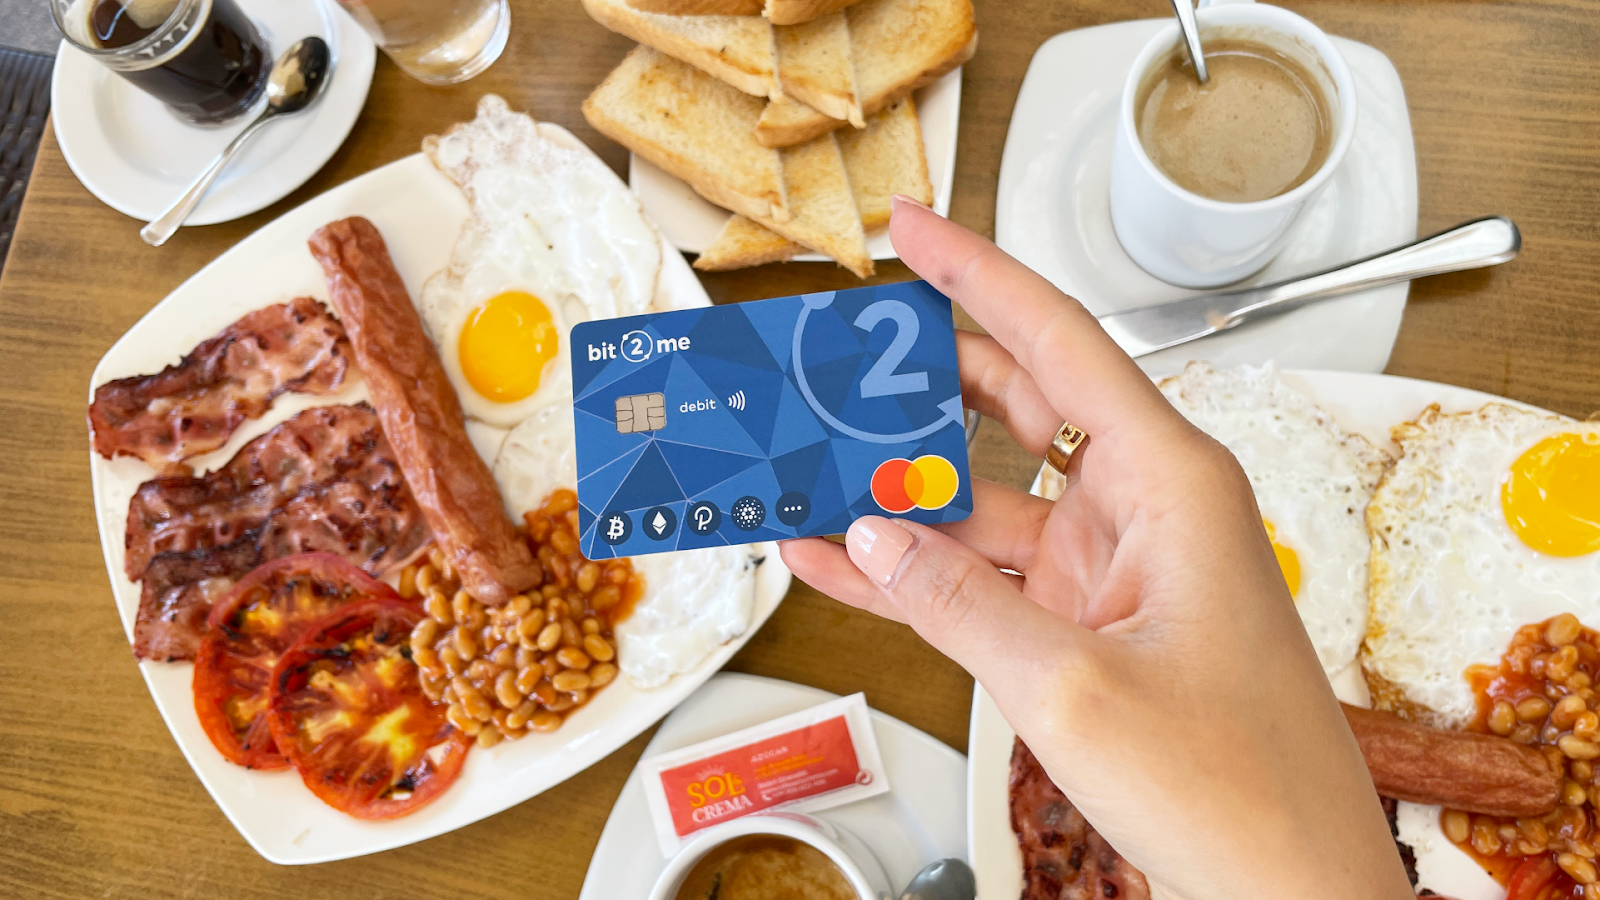 Sàn giao dịch Tây Ban Nha Bit2Me ra mắt thẻ ghi nợ với chương trình hoàn tiền 9% - 1